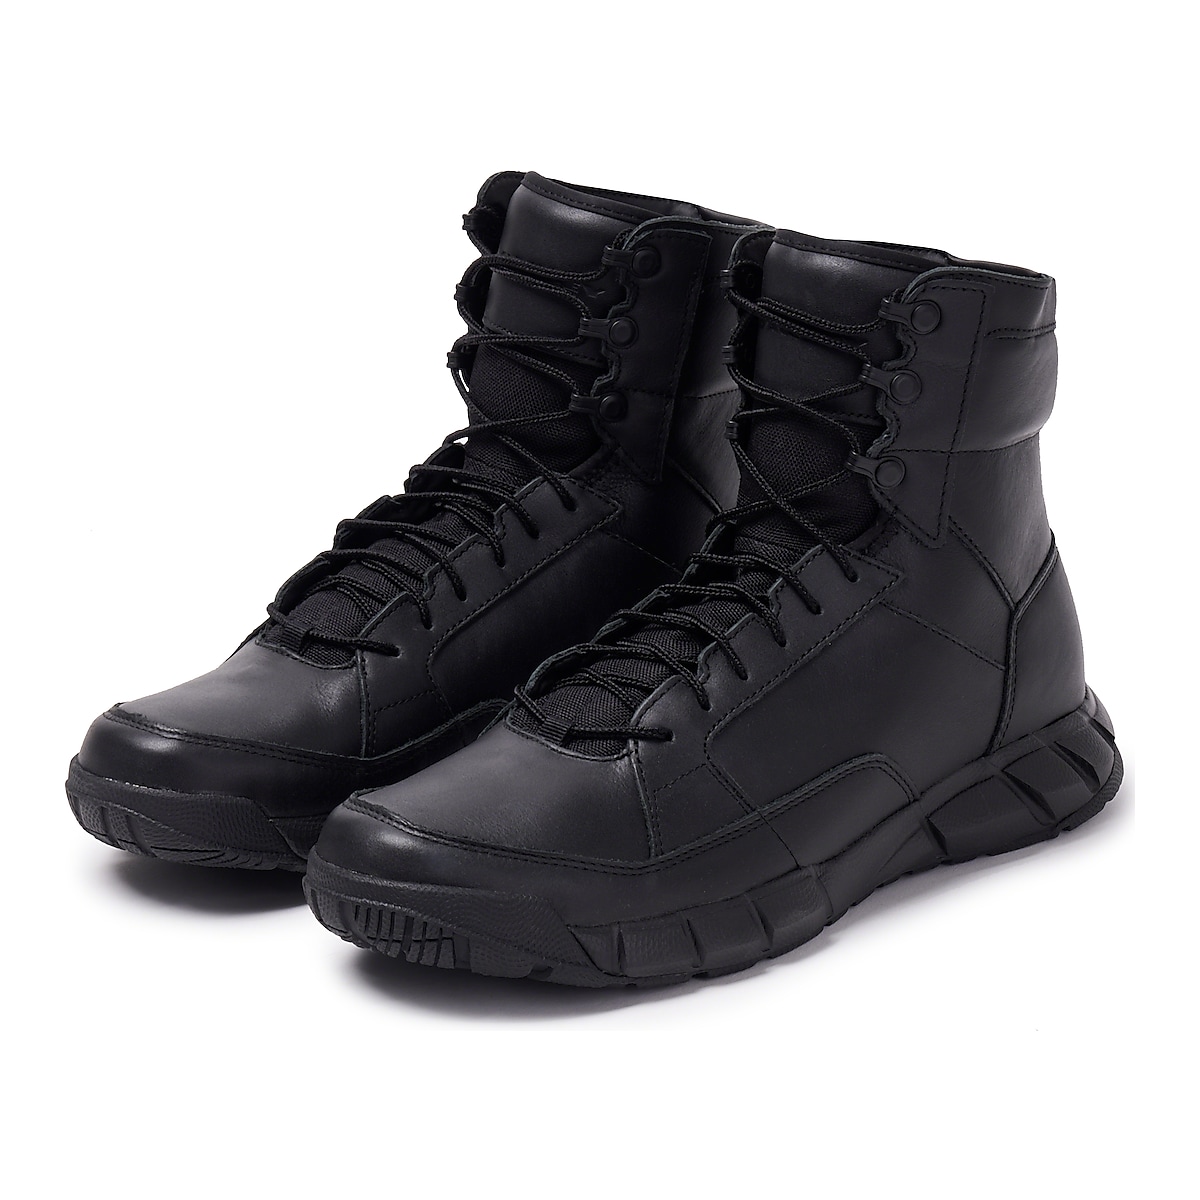 Oakley Light Assault Boot Leather - Black - 12099-001 | Oakley GB Store